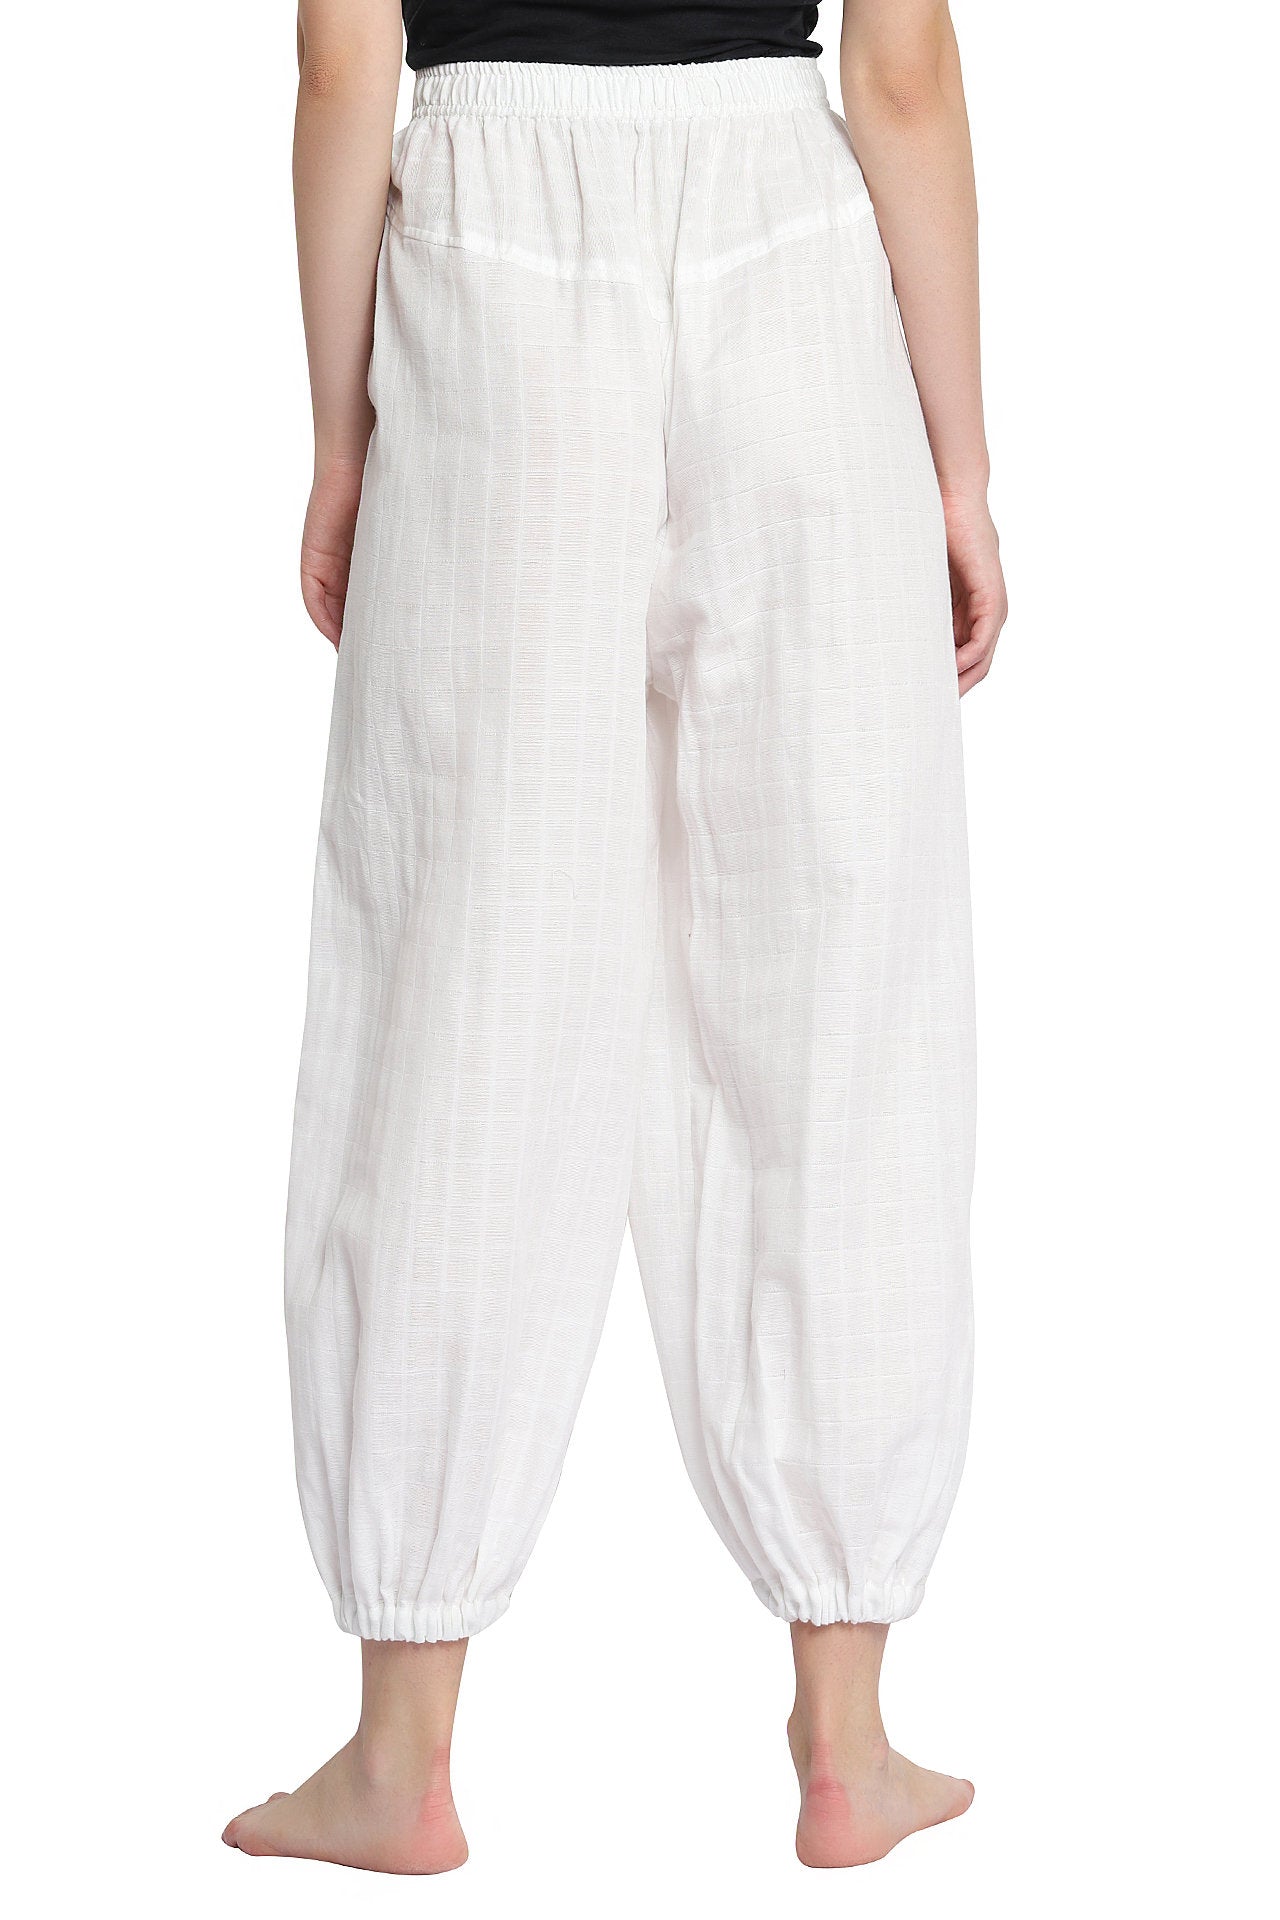 Organic Cotton Unisex Yoga Pants - Harem Style - YogaKargha